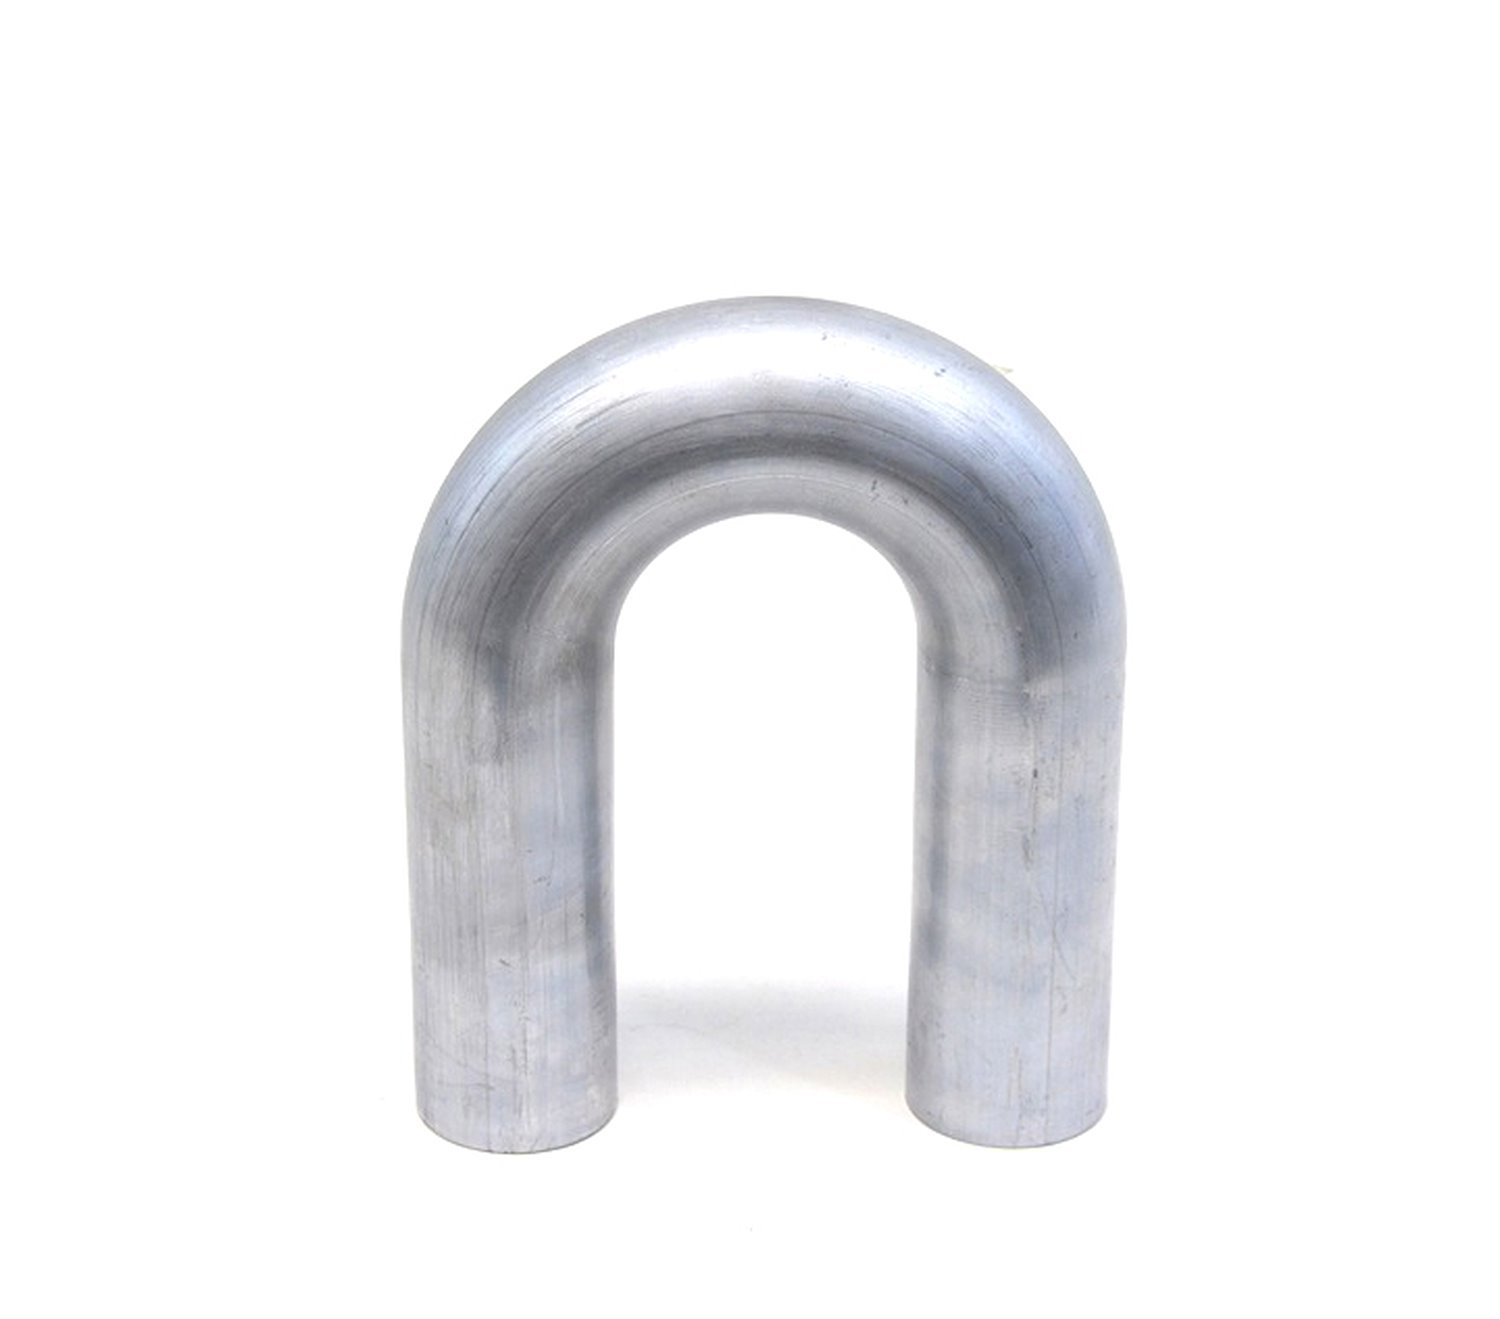 AT180-350-CLR-45 Aluminum Elbow Tube, 6061 Aluminum, 180-Degree U Bend Elbow Tubing, 3-1/2 in. OD, Tight Radius, 4-1/2 in. CLR